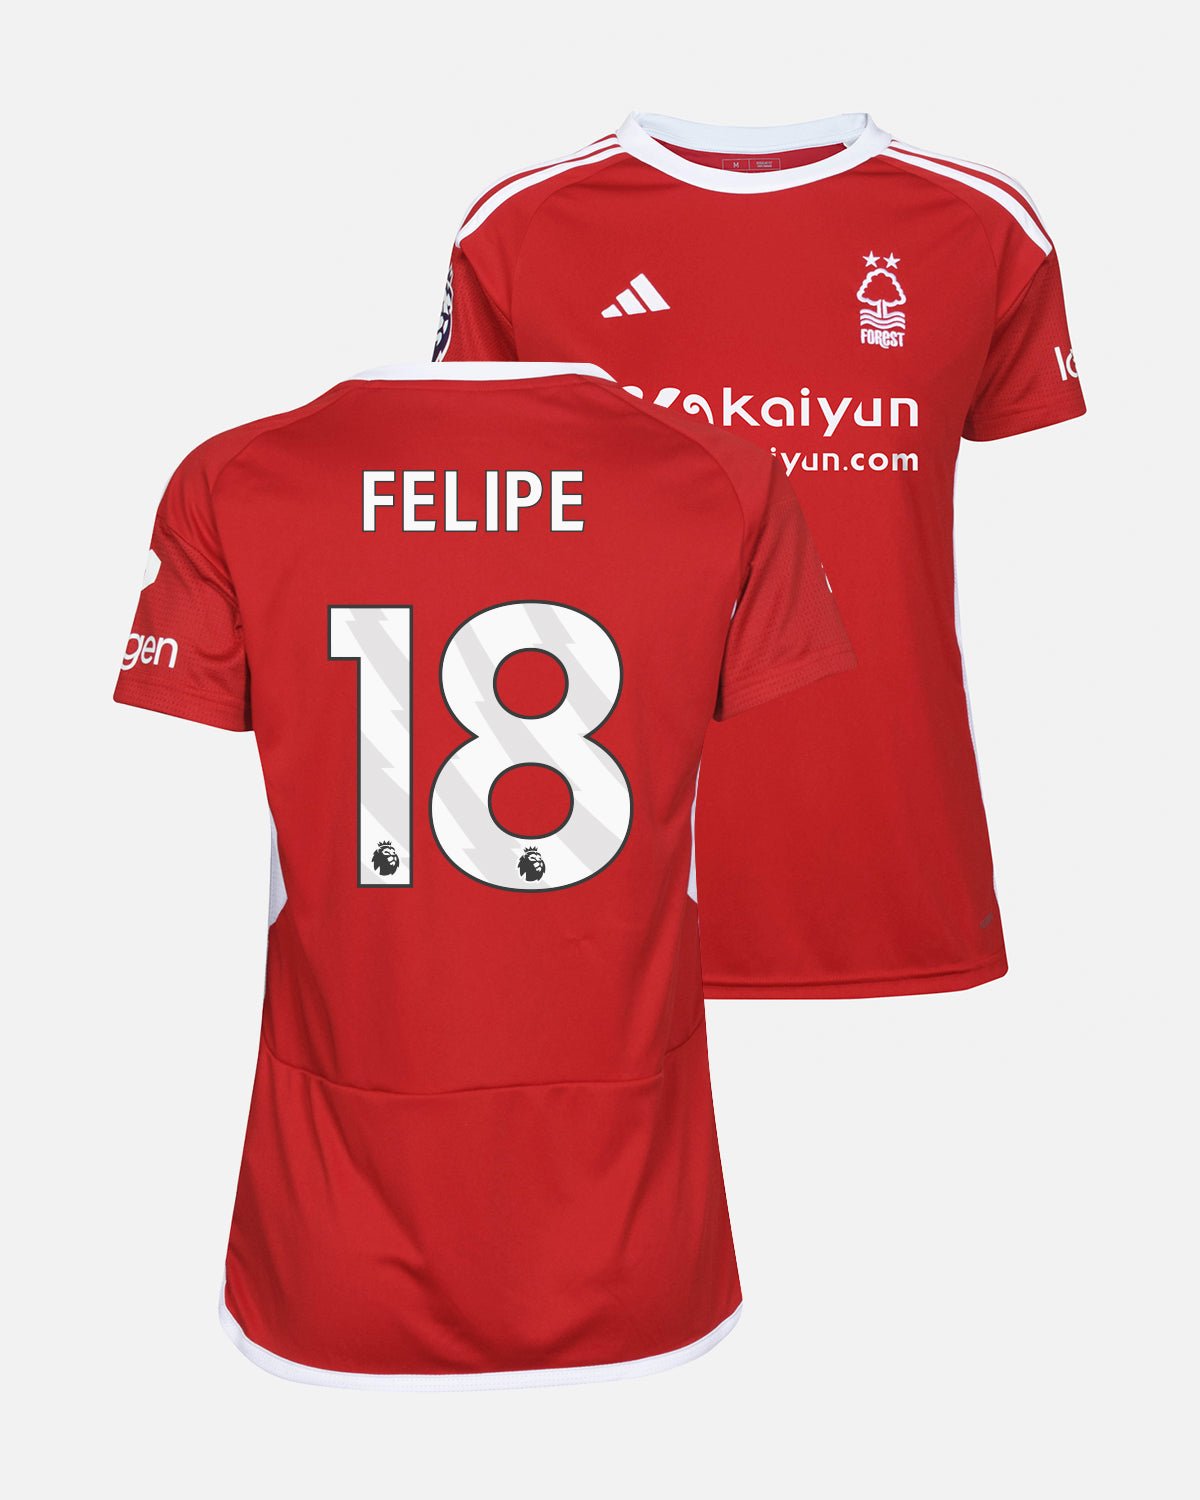 NFFC Women's Home Shirt 23-24 - Felipe 18 - Nottingham Forest FC